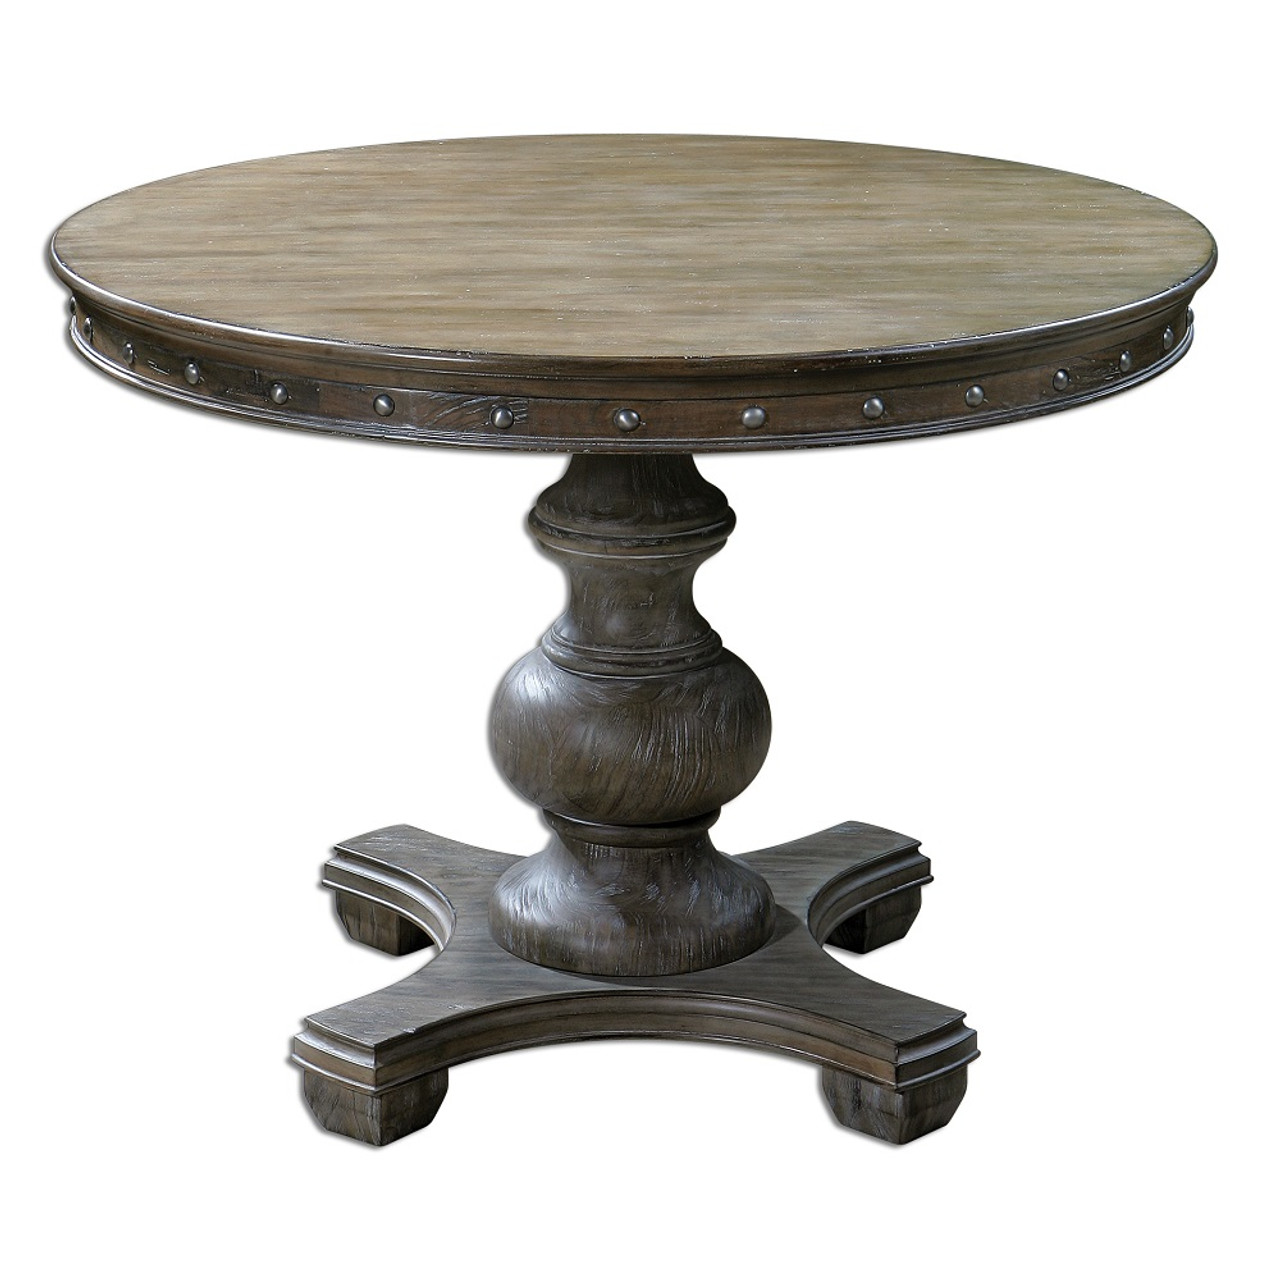 Sylvana Round Pedestal Table 42 Inch  83089.1383869201 ?c=2